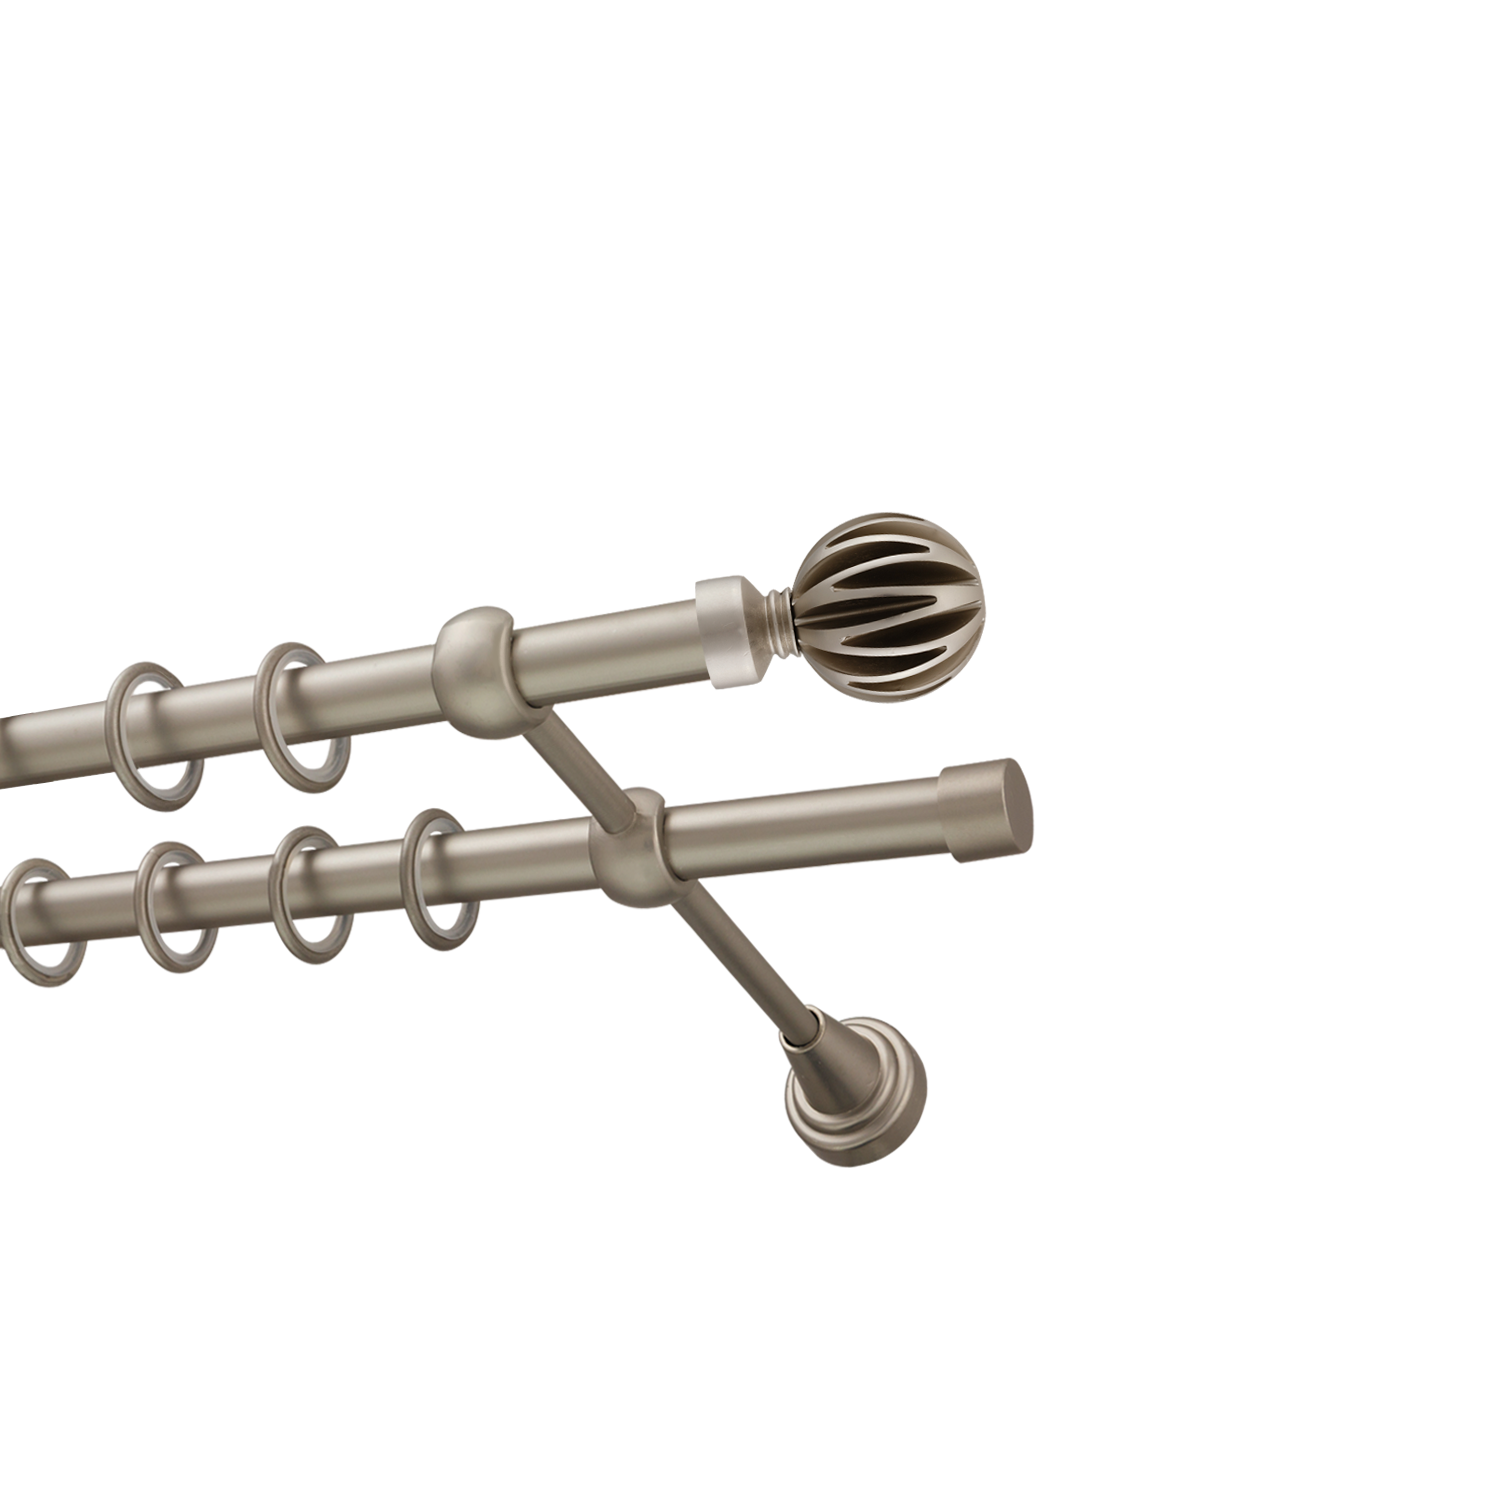 Металлический карниз для штор Шафран, двухрядный 16/16 мм, сталь, гладкая штанга, длина 180 см